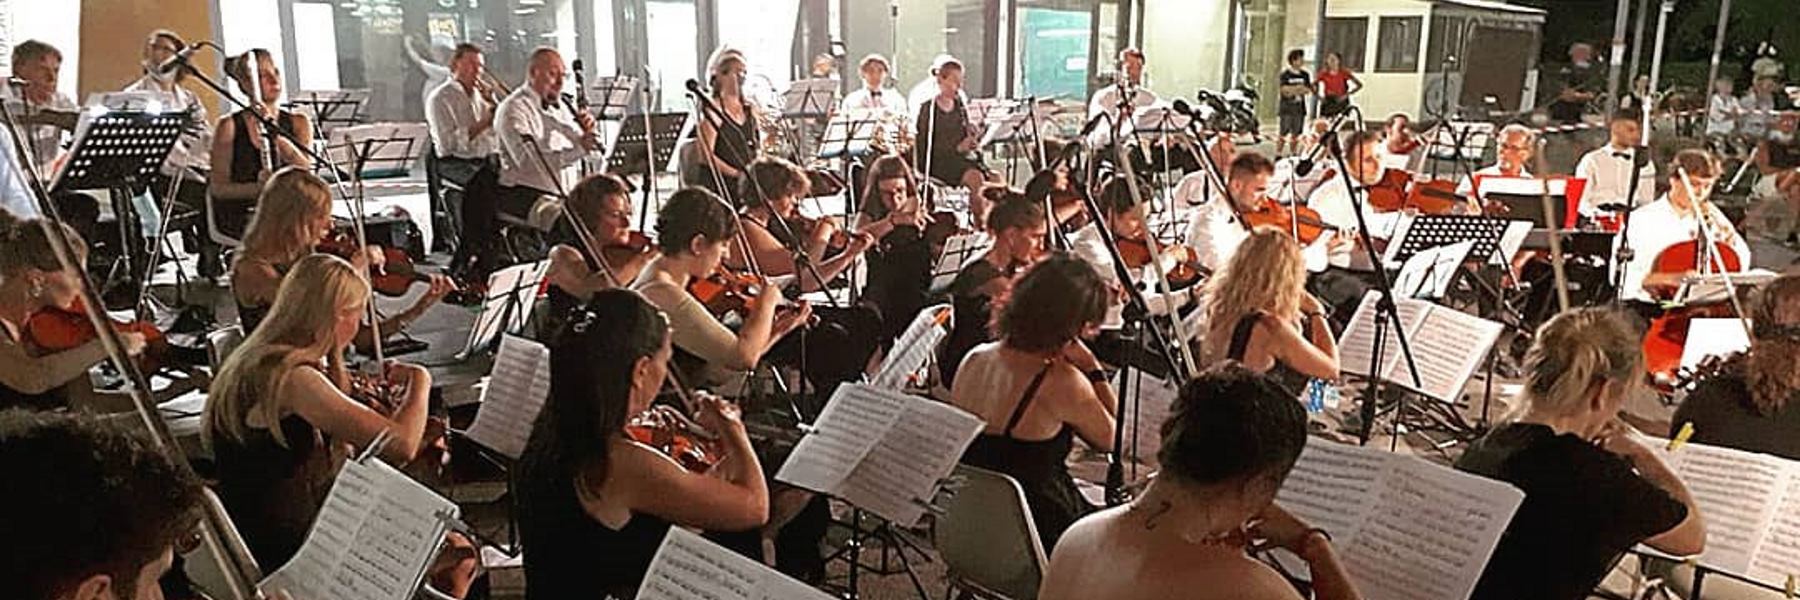 Concert by the Grande Orchestra Città di Cervia in Pinarella